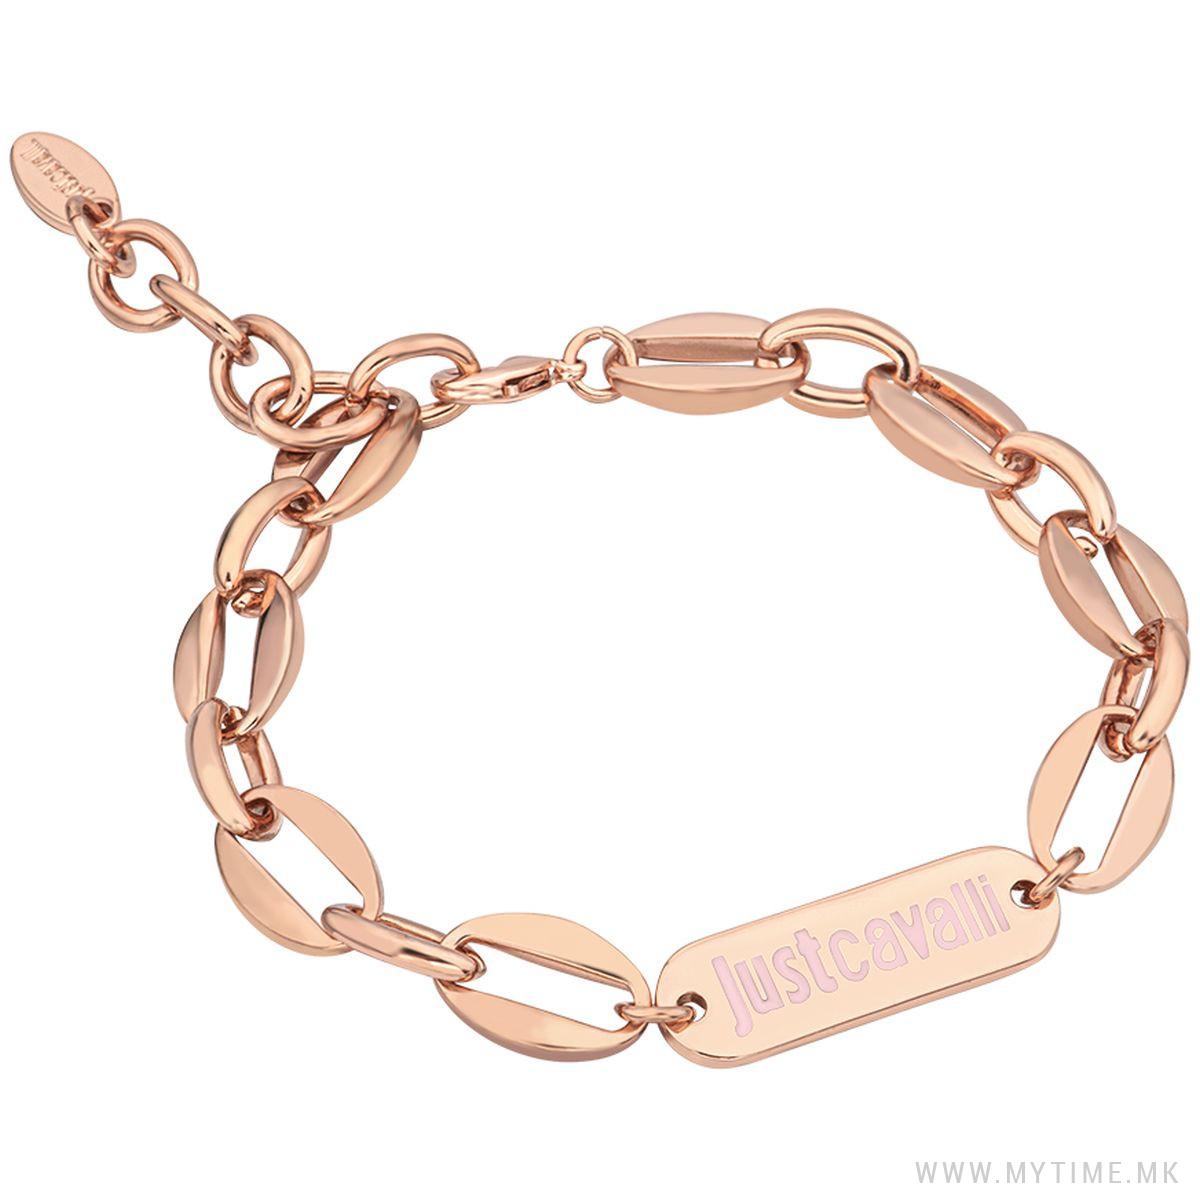 JCFB00693300 Fashion Bracelet 